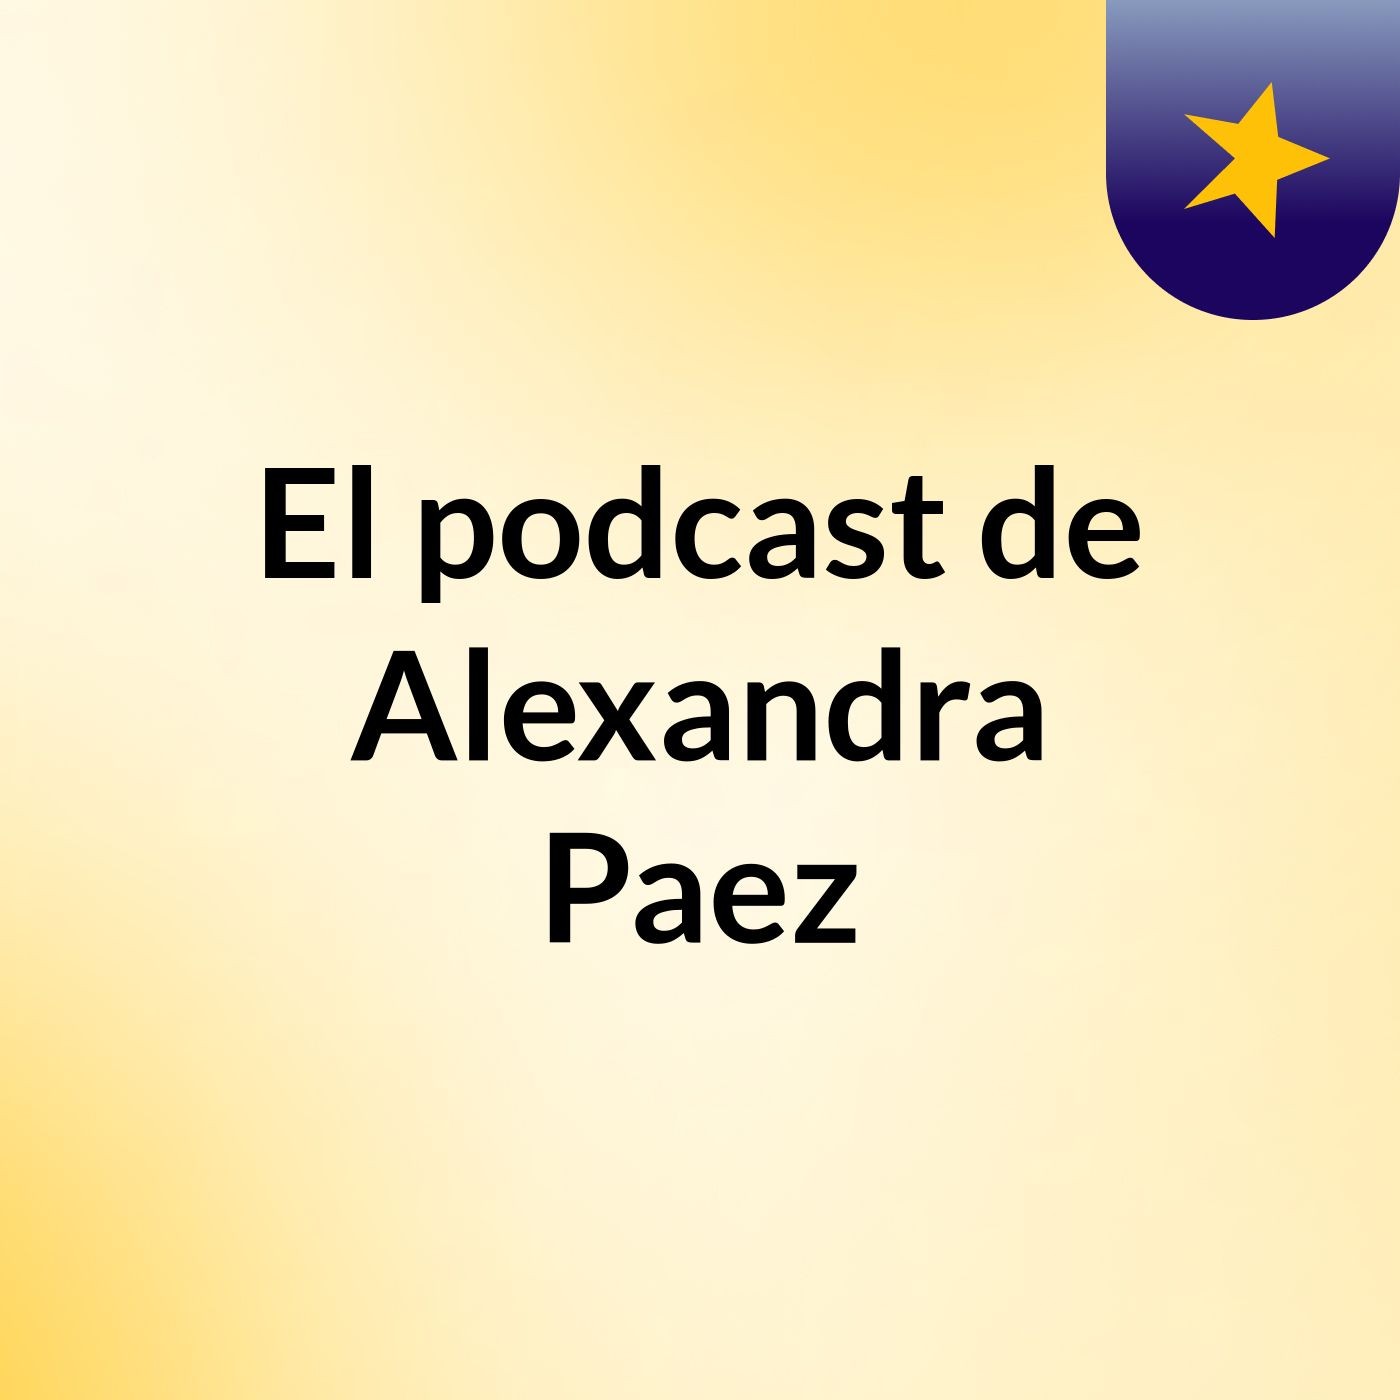 El podcast de Alexandra Paez